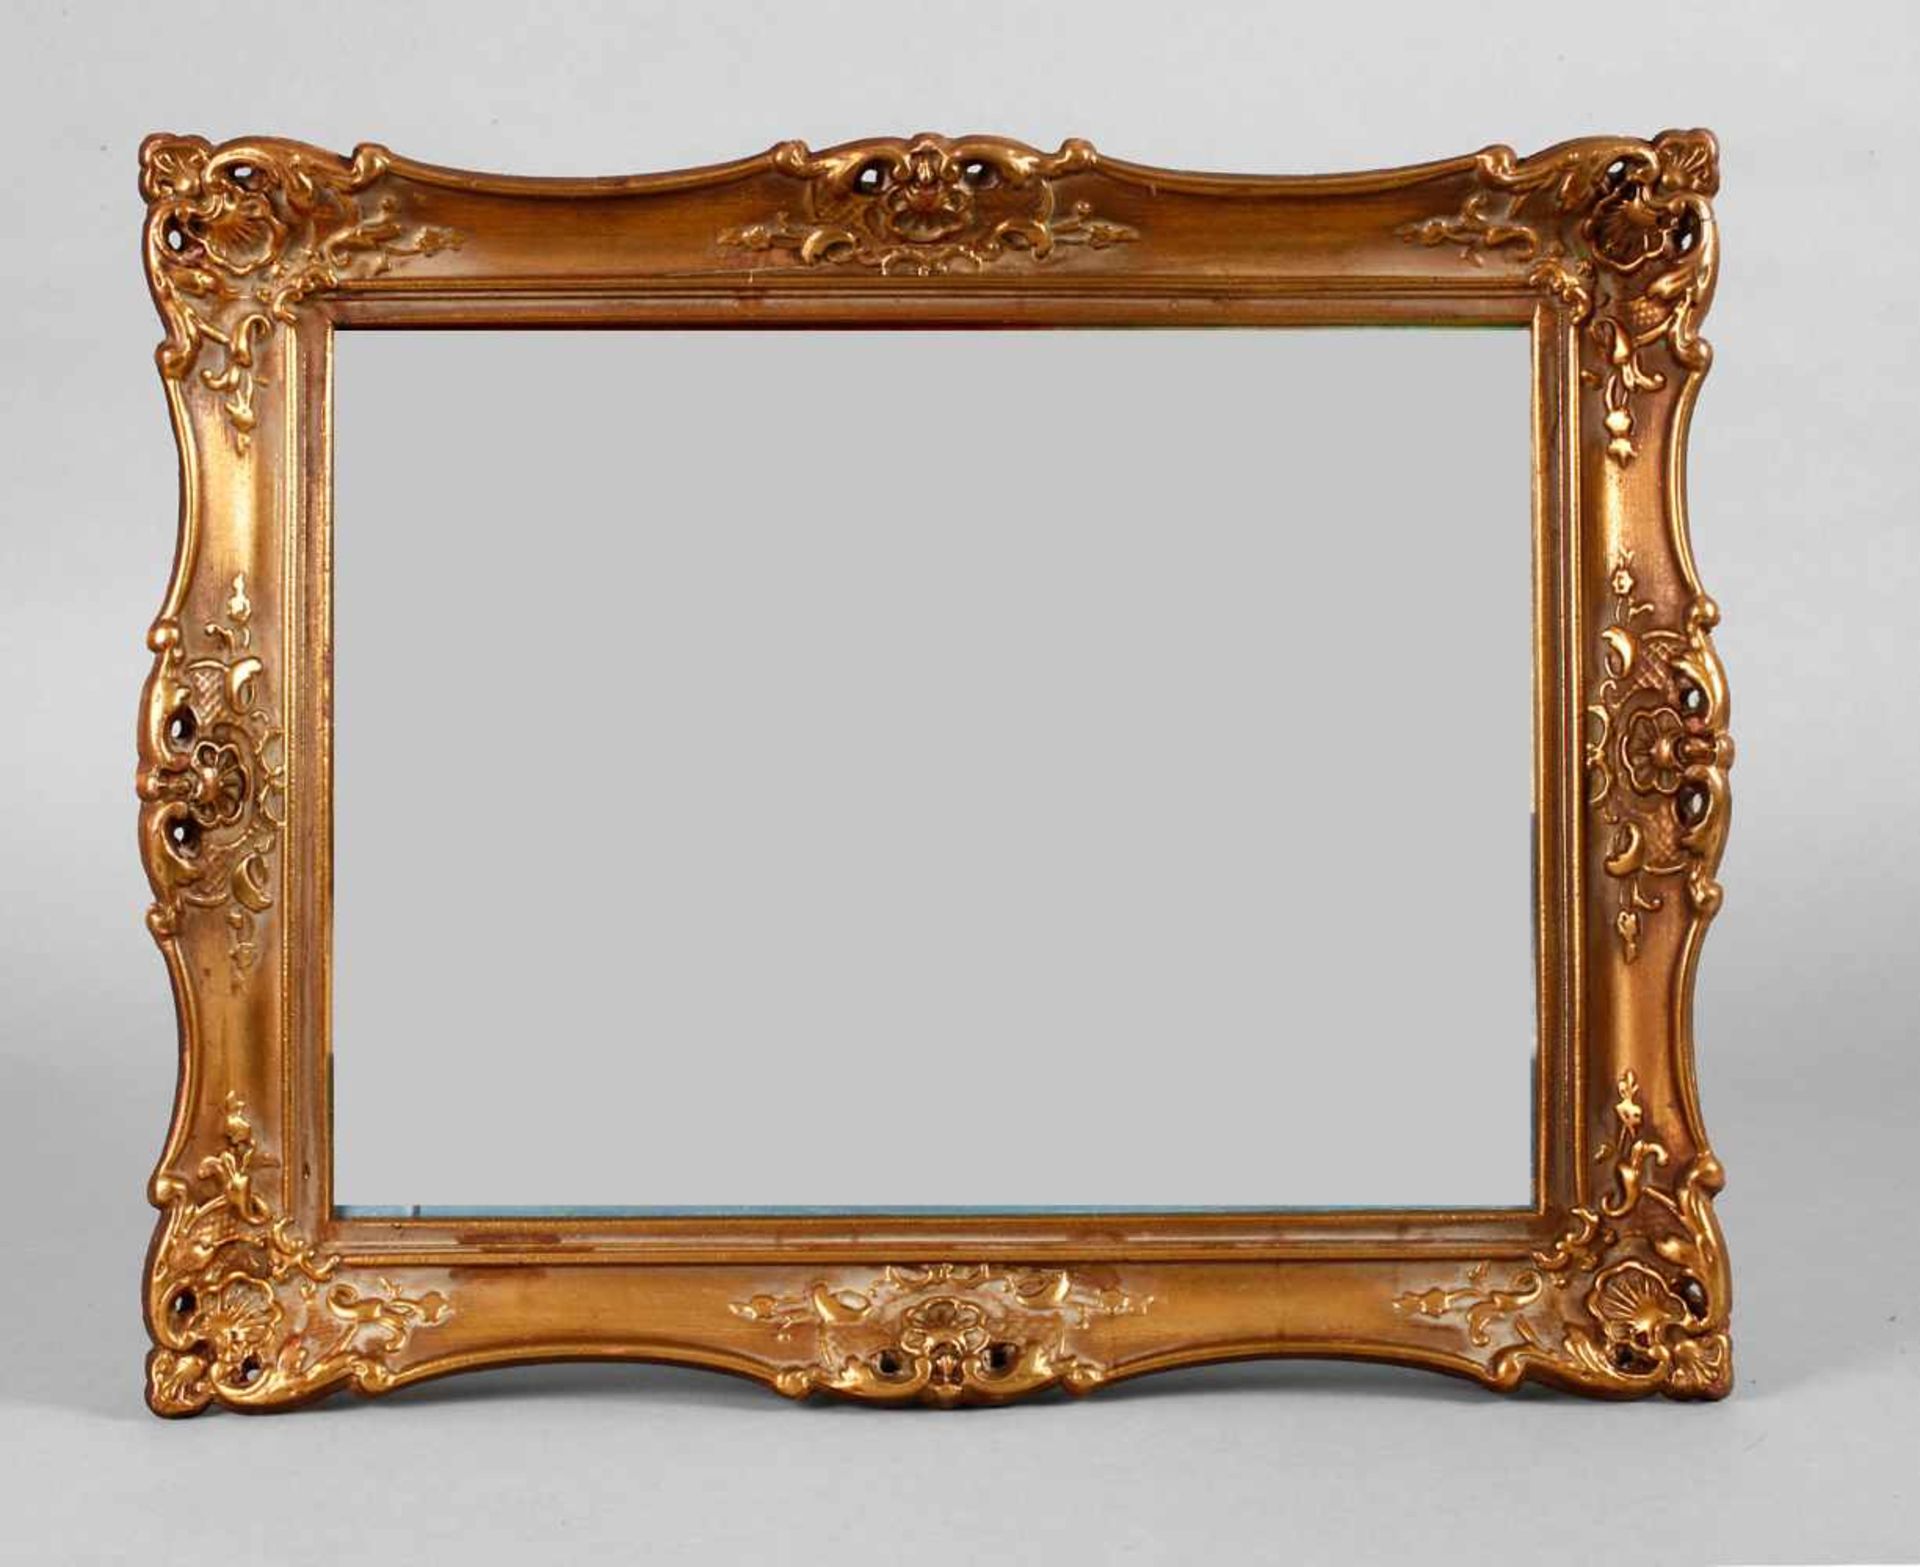 Goldstuckrahmen 20. Jh. Rahmen aus ca. 6 cm breiter, steigend profilierter, mit Eck- und